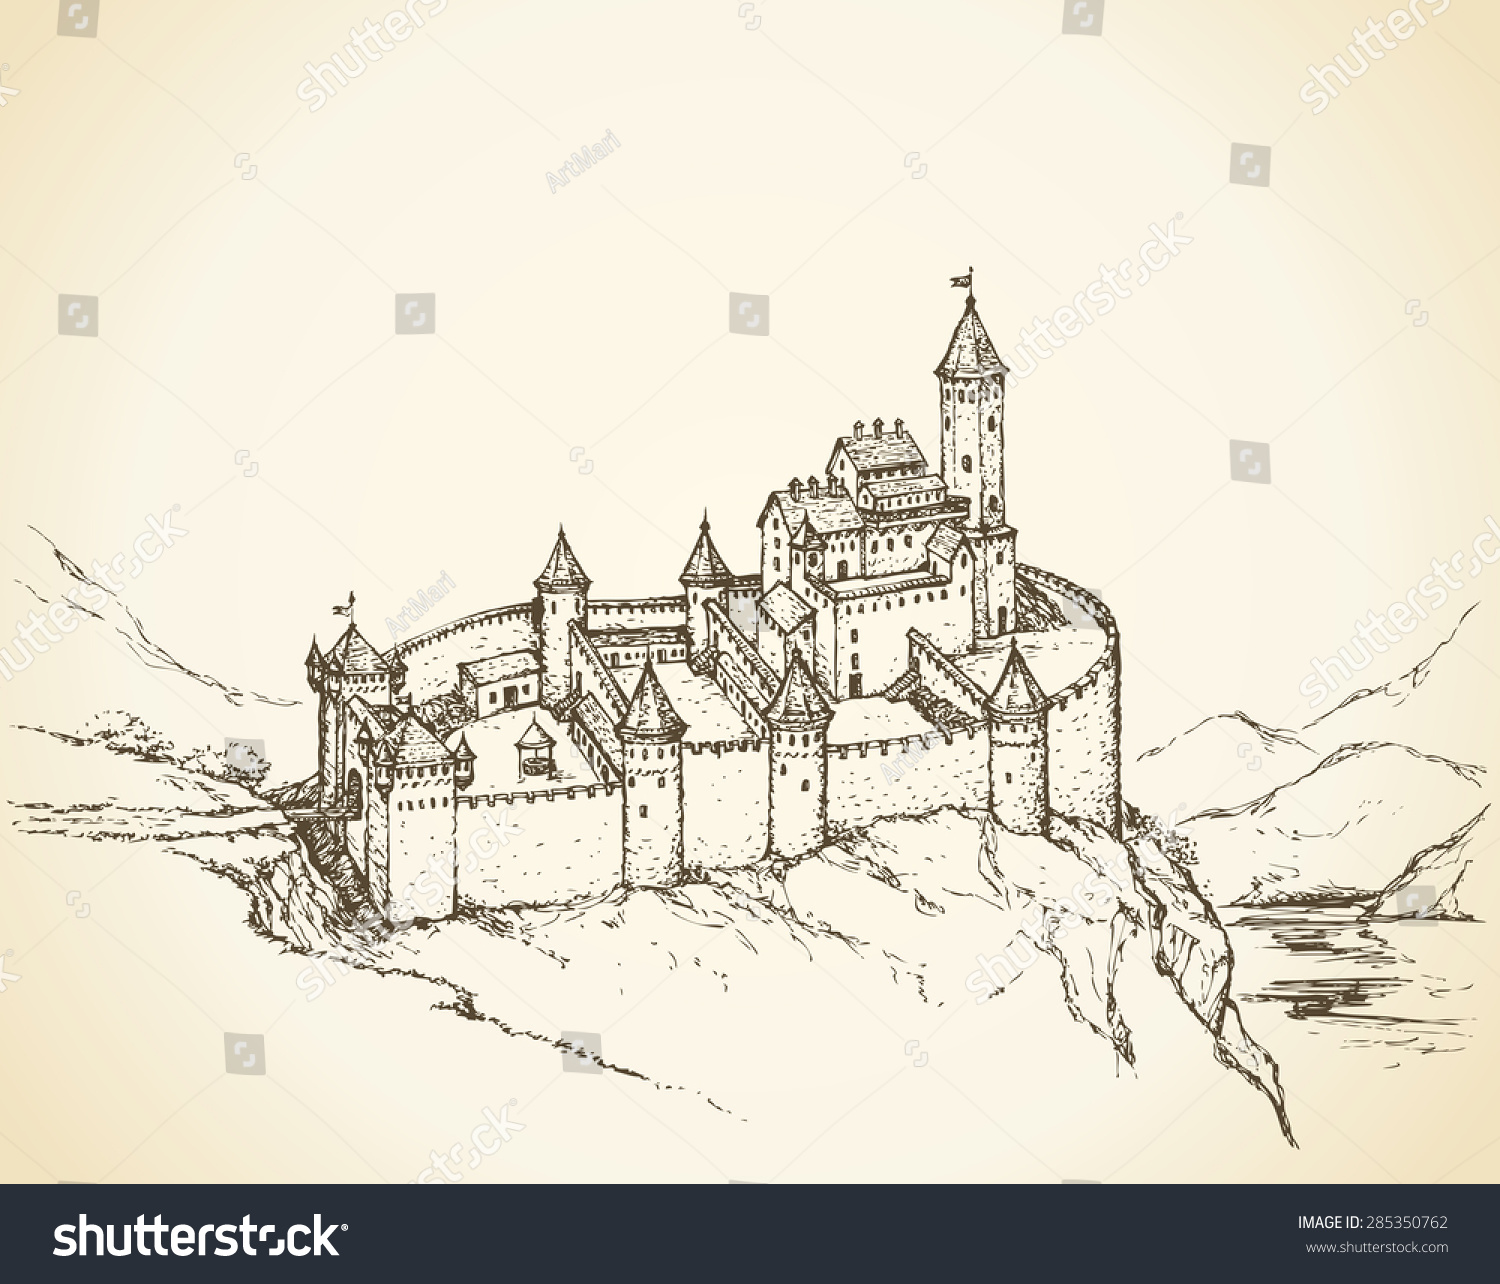 Крепость в романском стиле рисунок